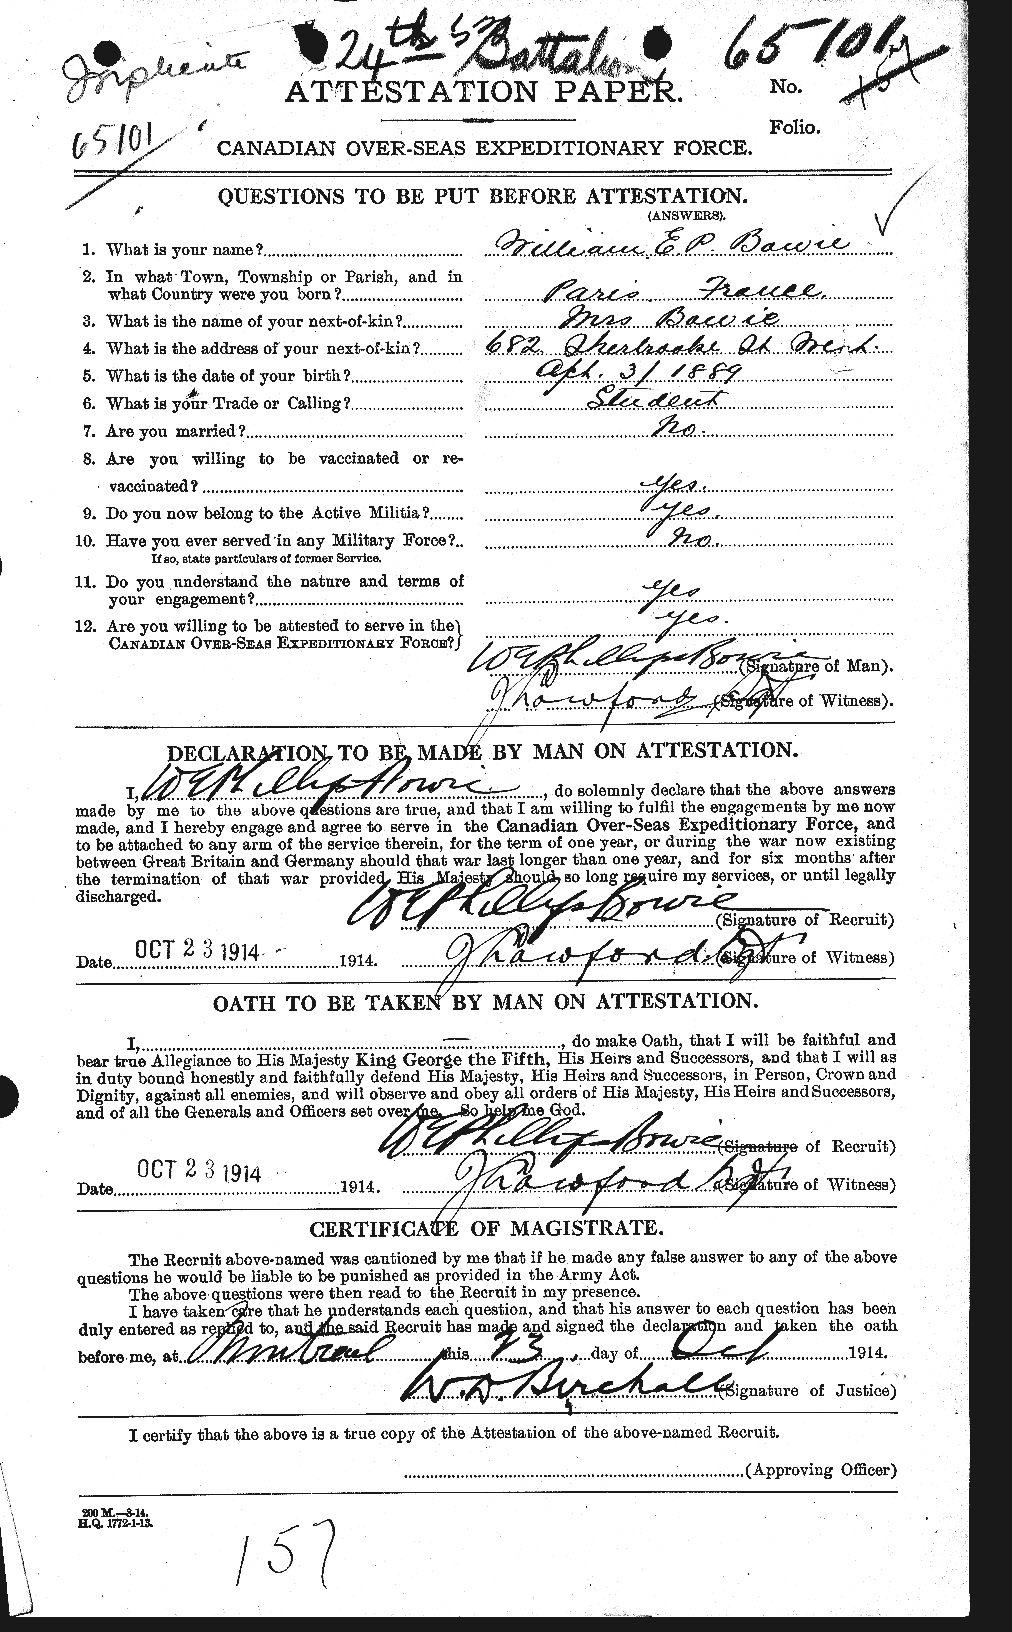 Dossiers du Personnel de la Première Guerre mondiale - CEC 253750a